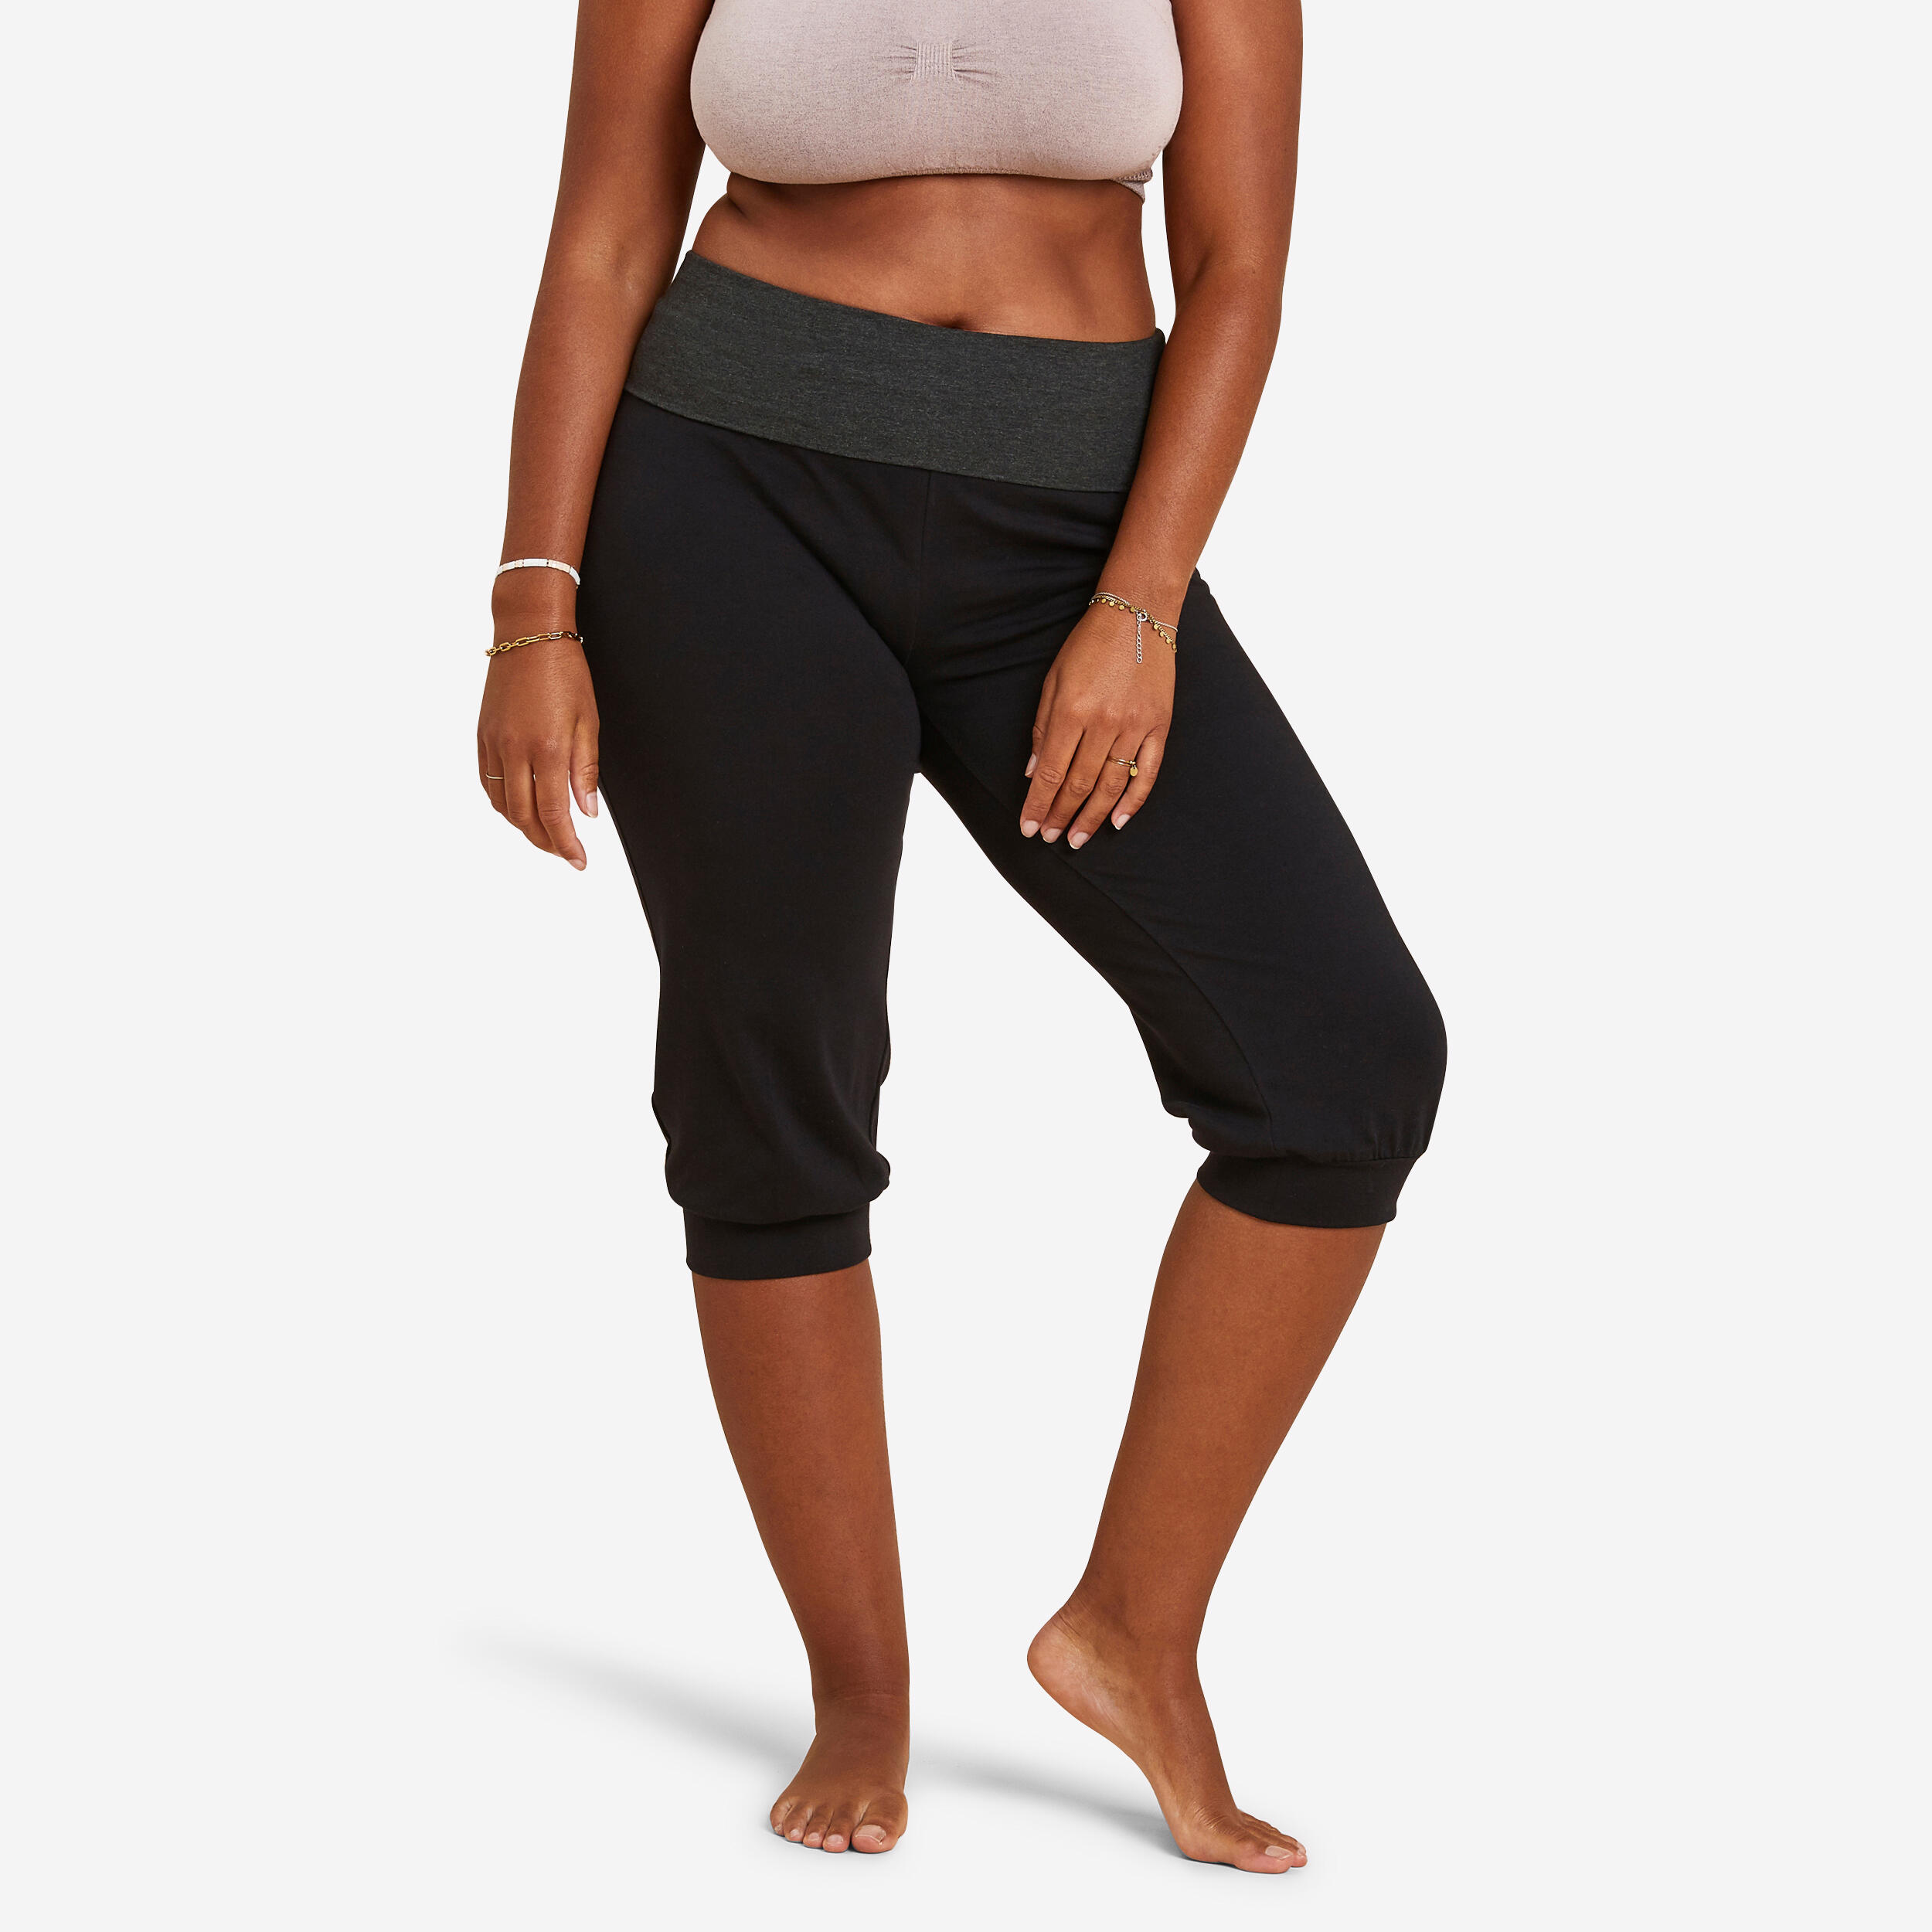 corsaire coton yoga femme noir / gris - kimjaly